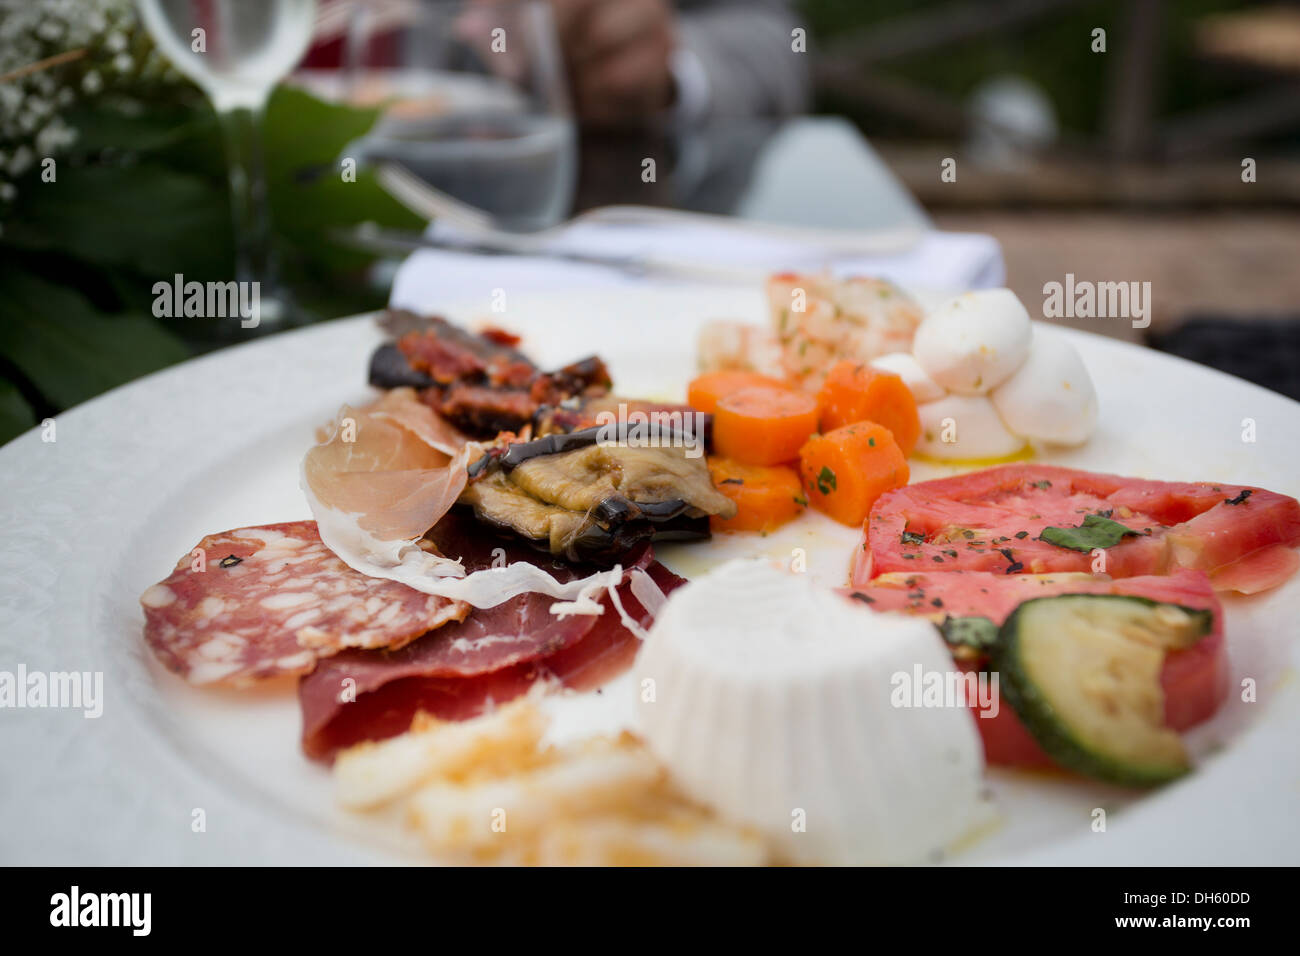 Wurst, Fleisch und Käse aus Italien in einem typischen Vorspeise Teller Stockfoto